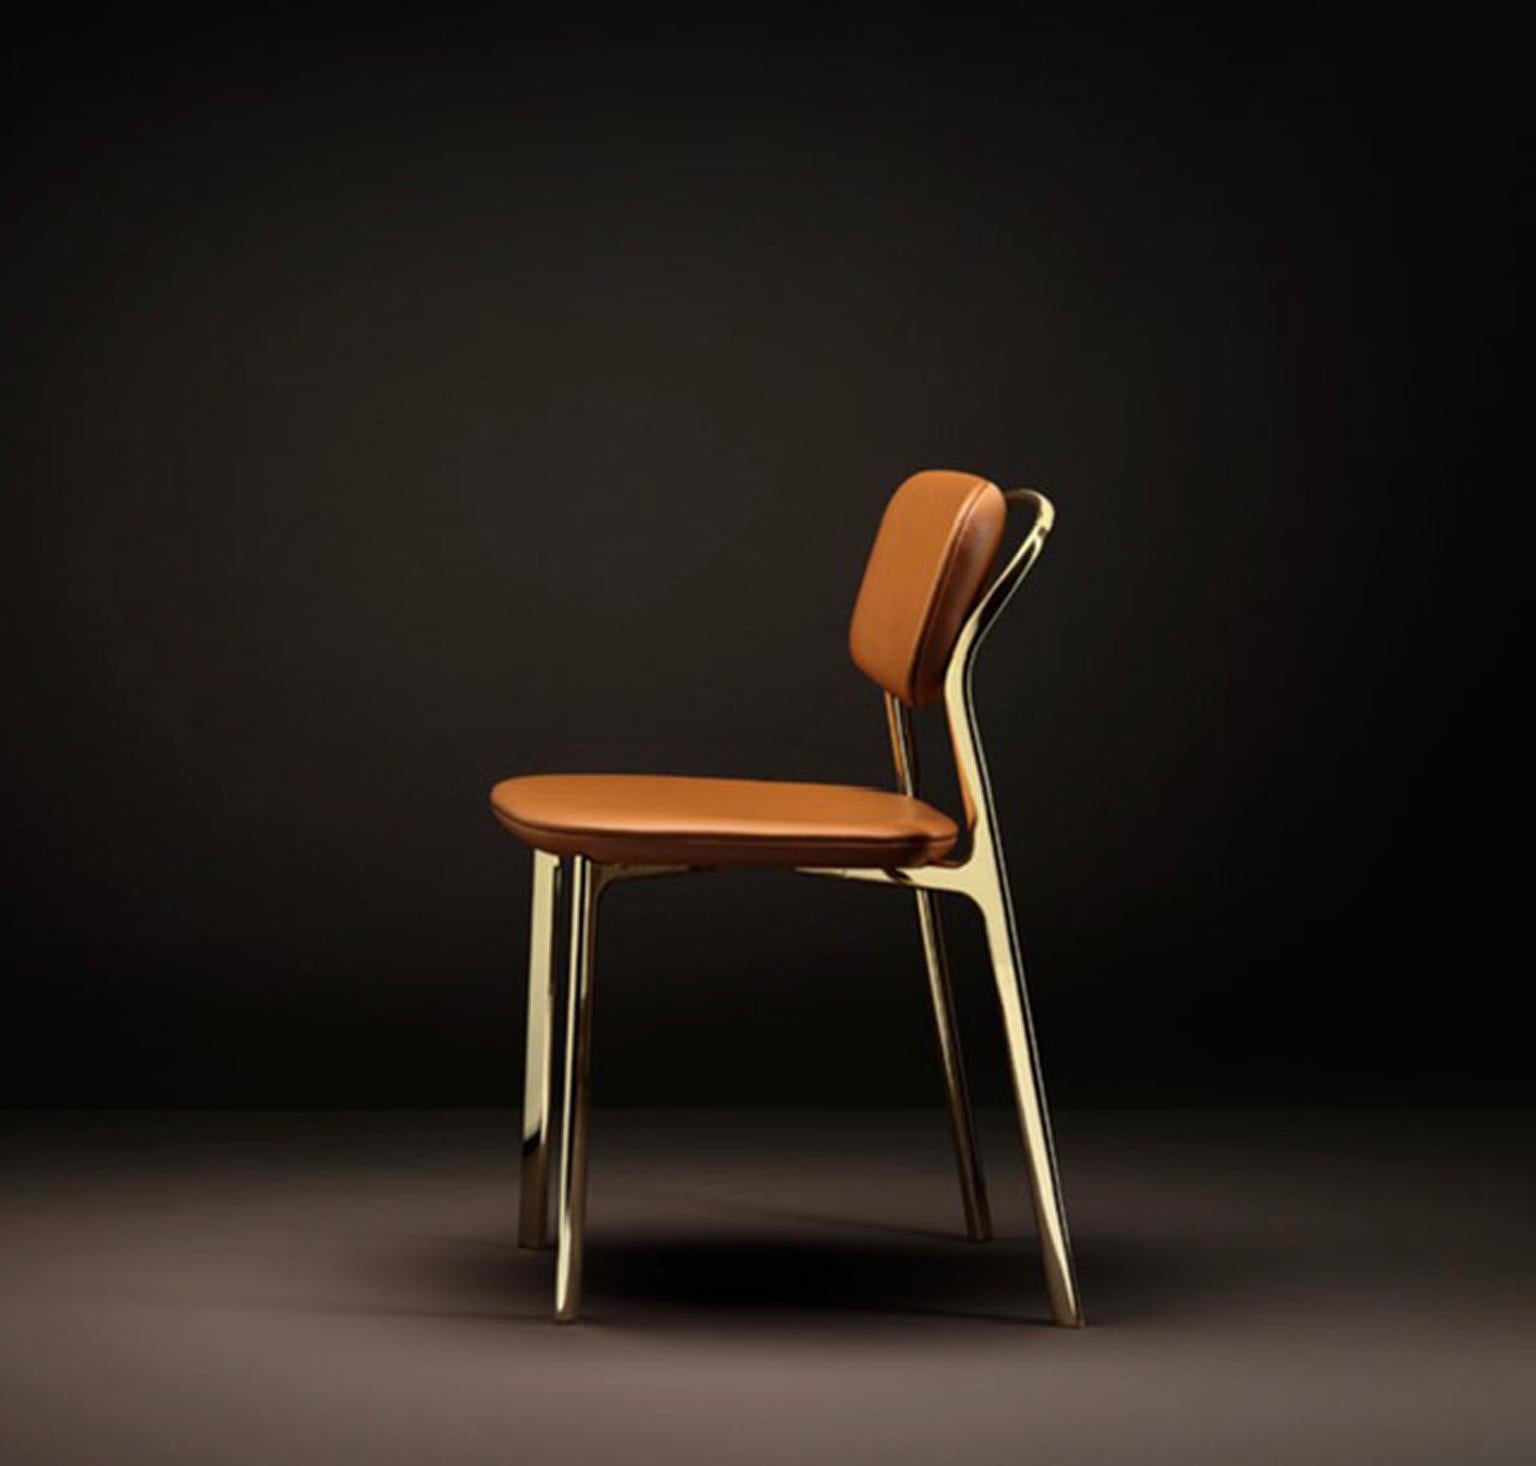 Das Design dieses kultigen Ghidini-Stuhls von 1961 wurde von der kalifornischen Küste inspiriert.
Die Form des Stuhls verbindet raffinierte architektonische Elemente mit fließenden Gesten und bringt überraschende Designmomente in einen funktionalen